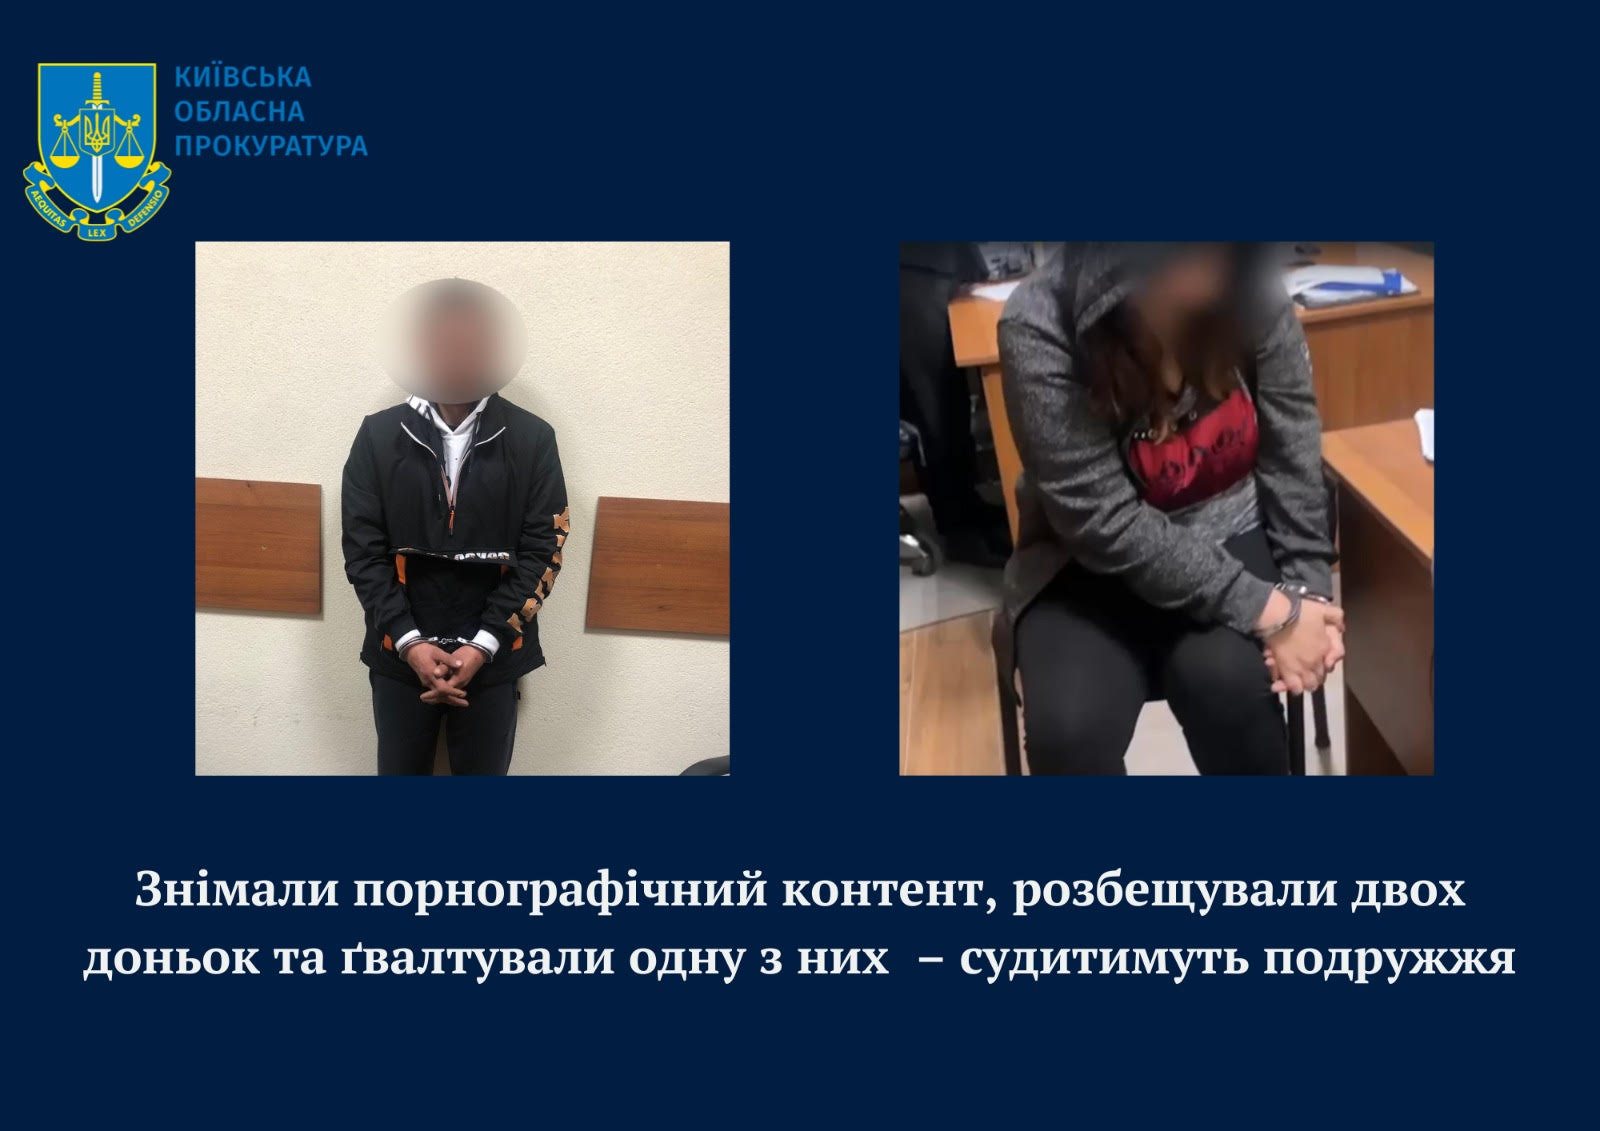 Знімали порнографічний контент, розбещували двох доньок та ґвалтували одну з них – на Київщині судитимуть подружжя